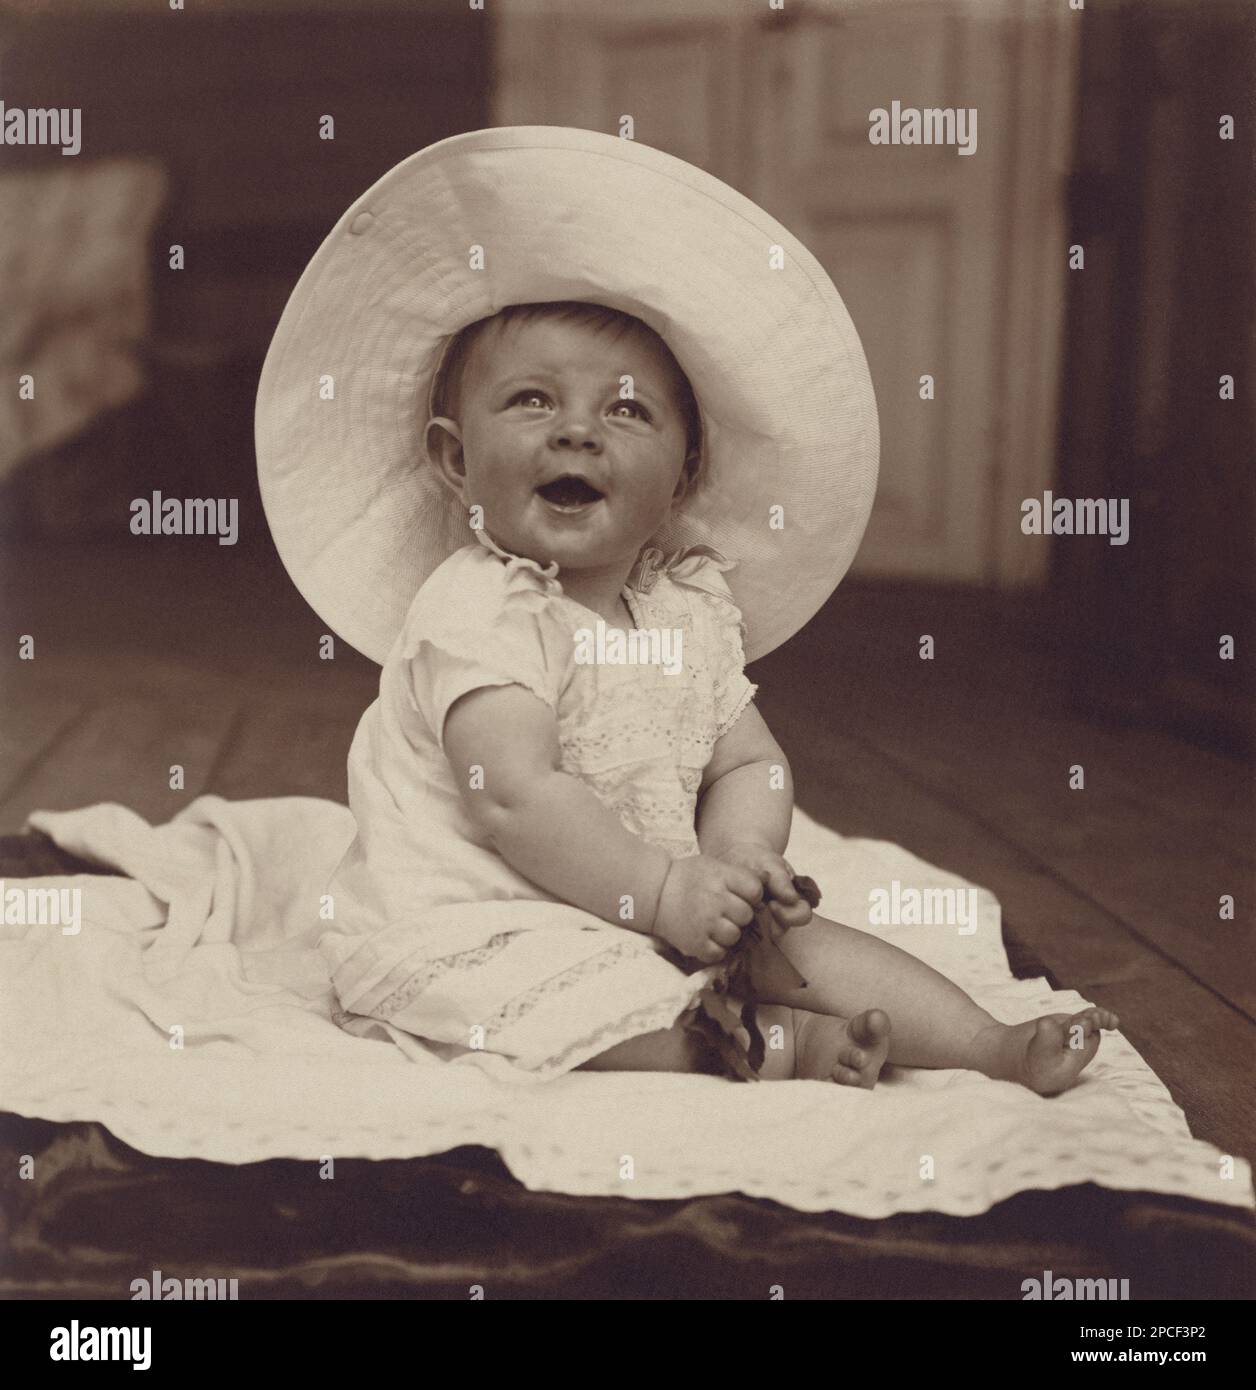 1905 Ca , RUSSLAND : Ein kleines Kind auf dem Teppich - Hut - cappello - Lächeln - sorriso - Bebé - Baby - FOTO STORICHE - GESCHICHTSFOTOS - - BAMBINO - BAMBINI - KINDER - BABY - KINDHEIT - BELLE EPOQUE - ------ Archivio GBB Stockfoto